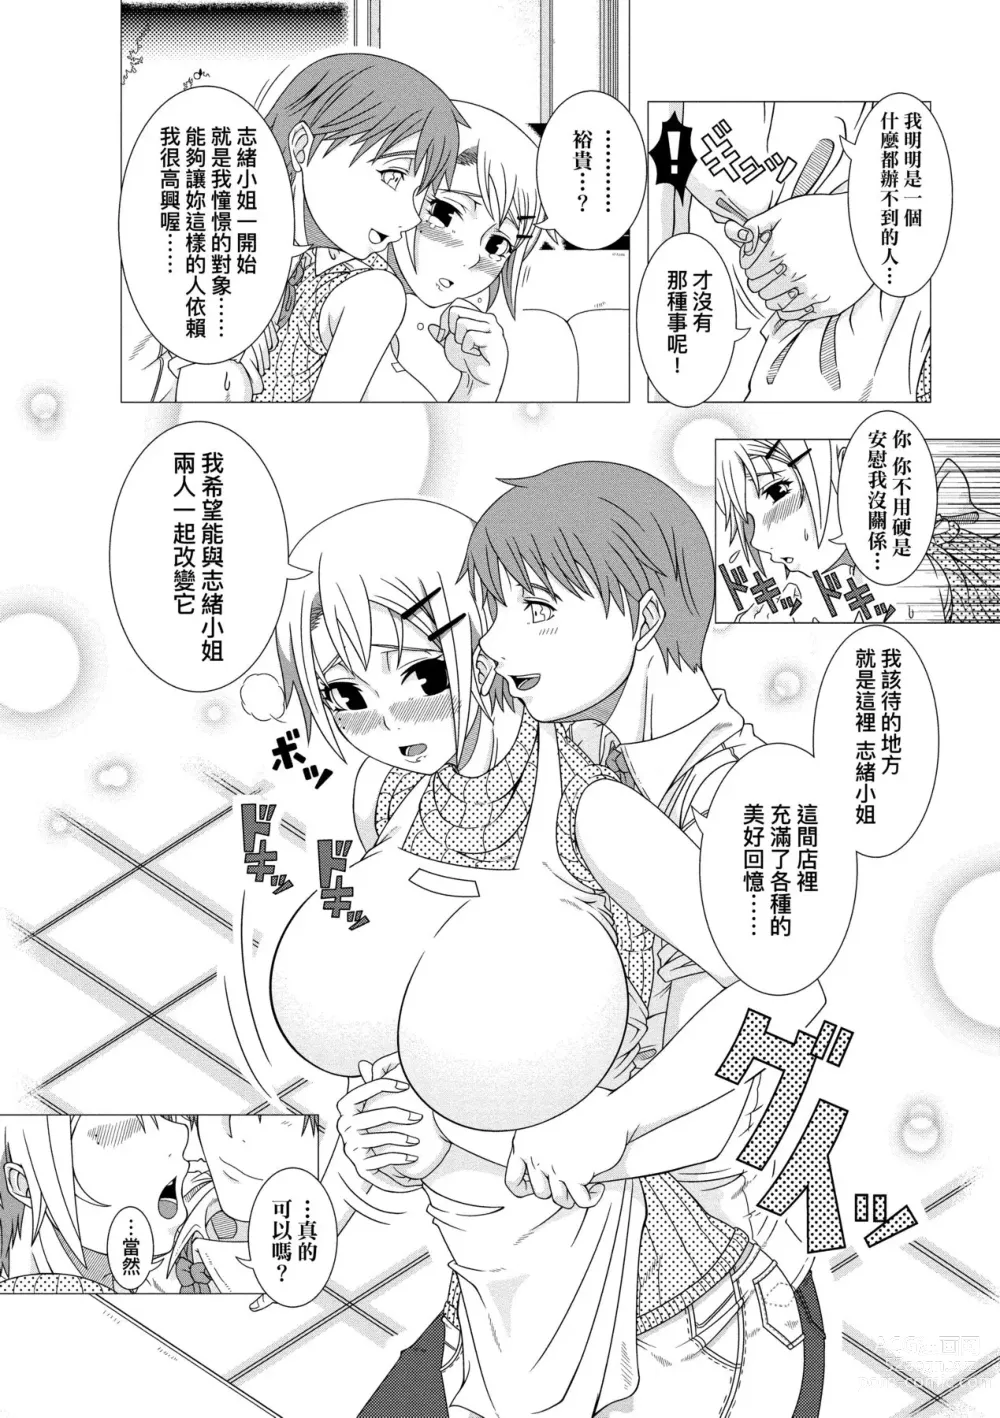 Page 200 of manga Hitozuma Life (decensored)